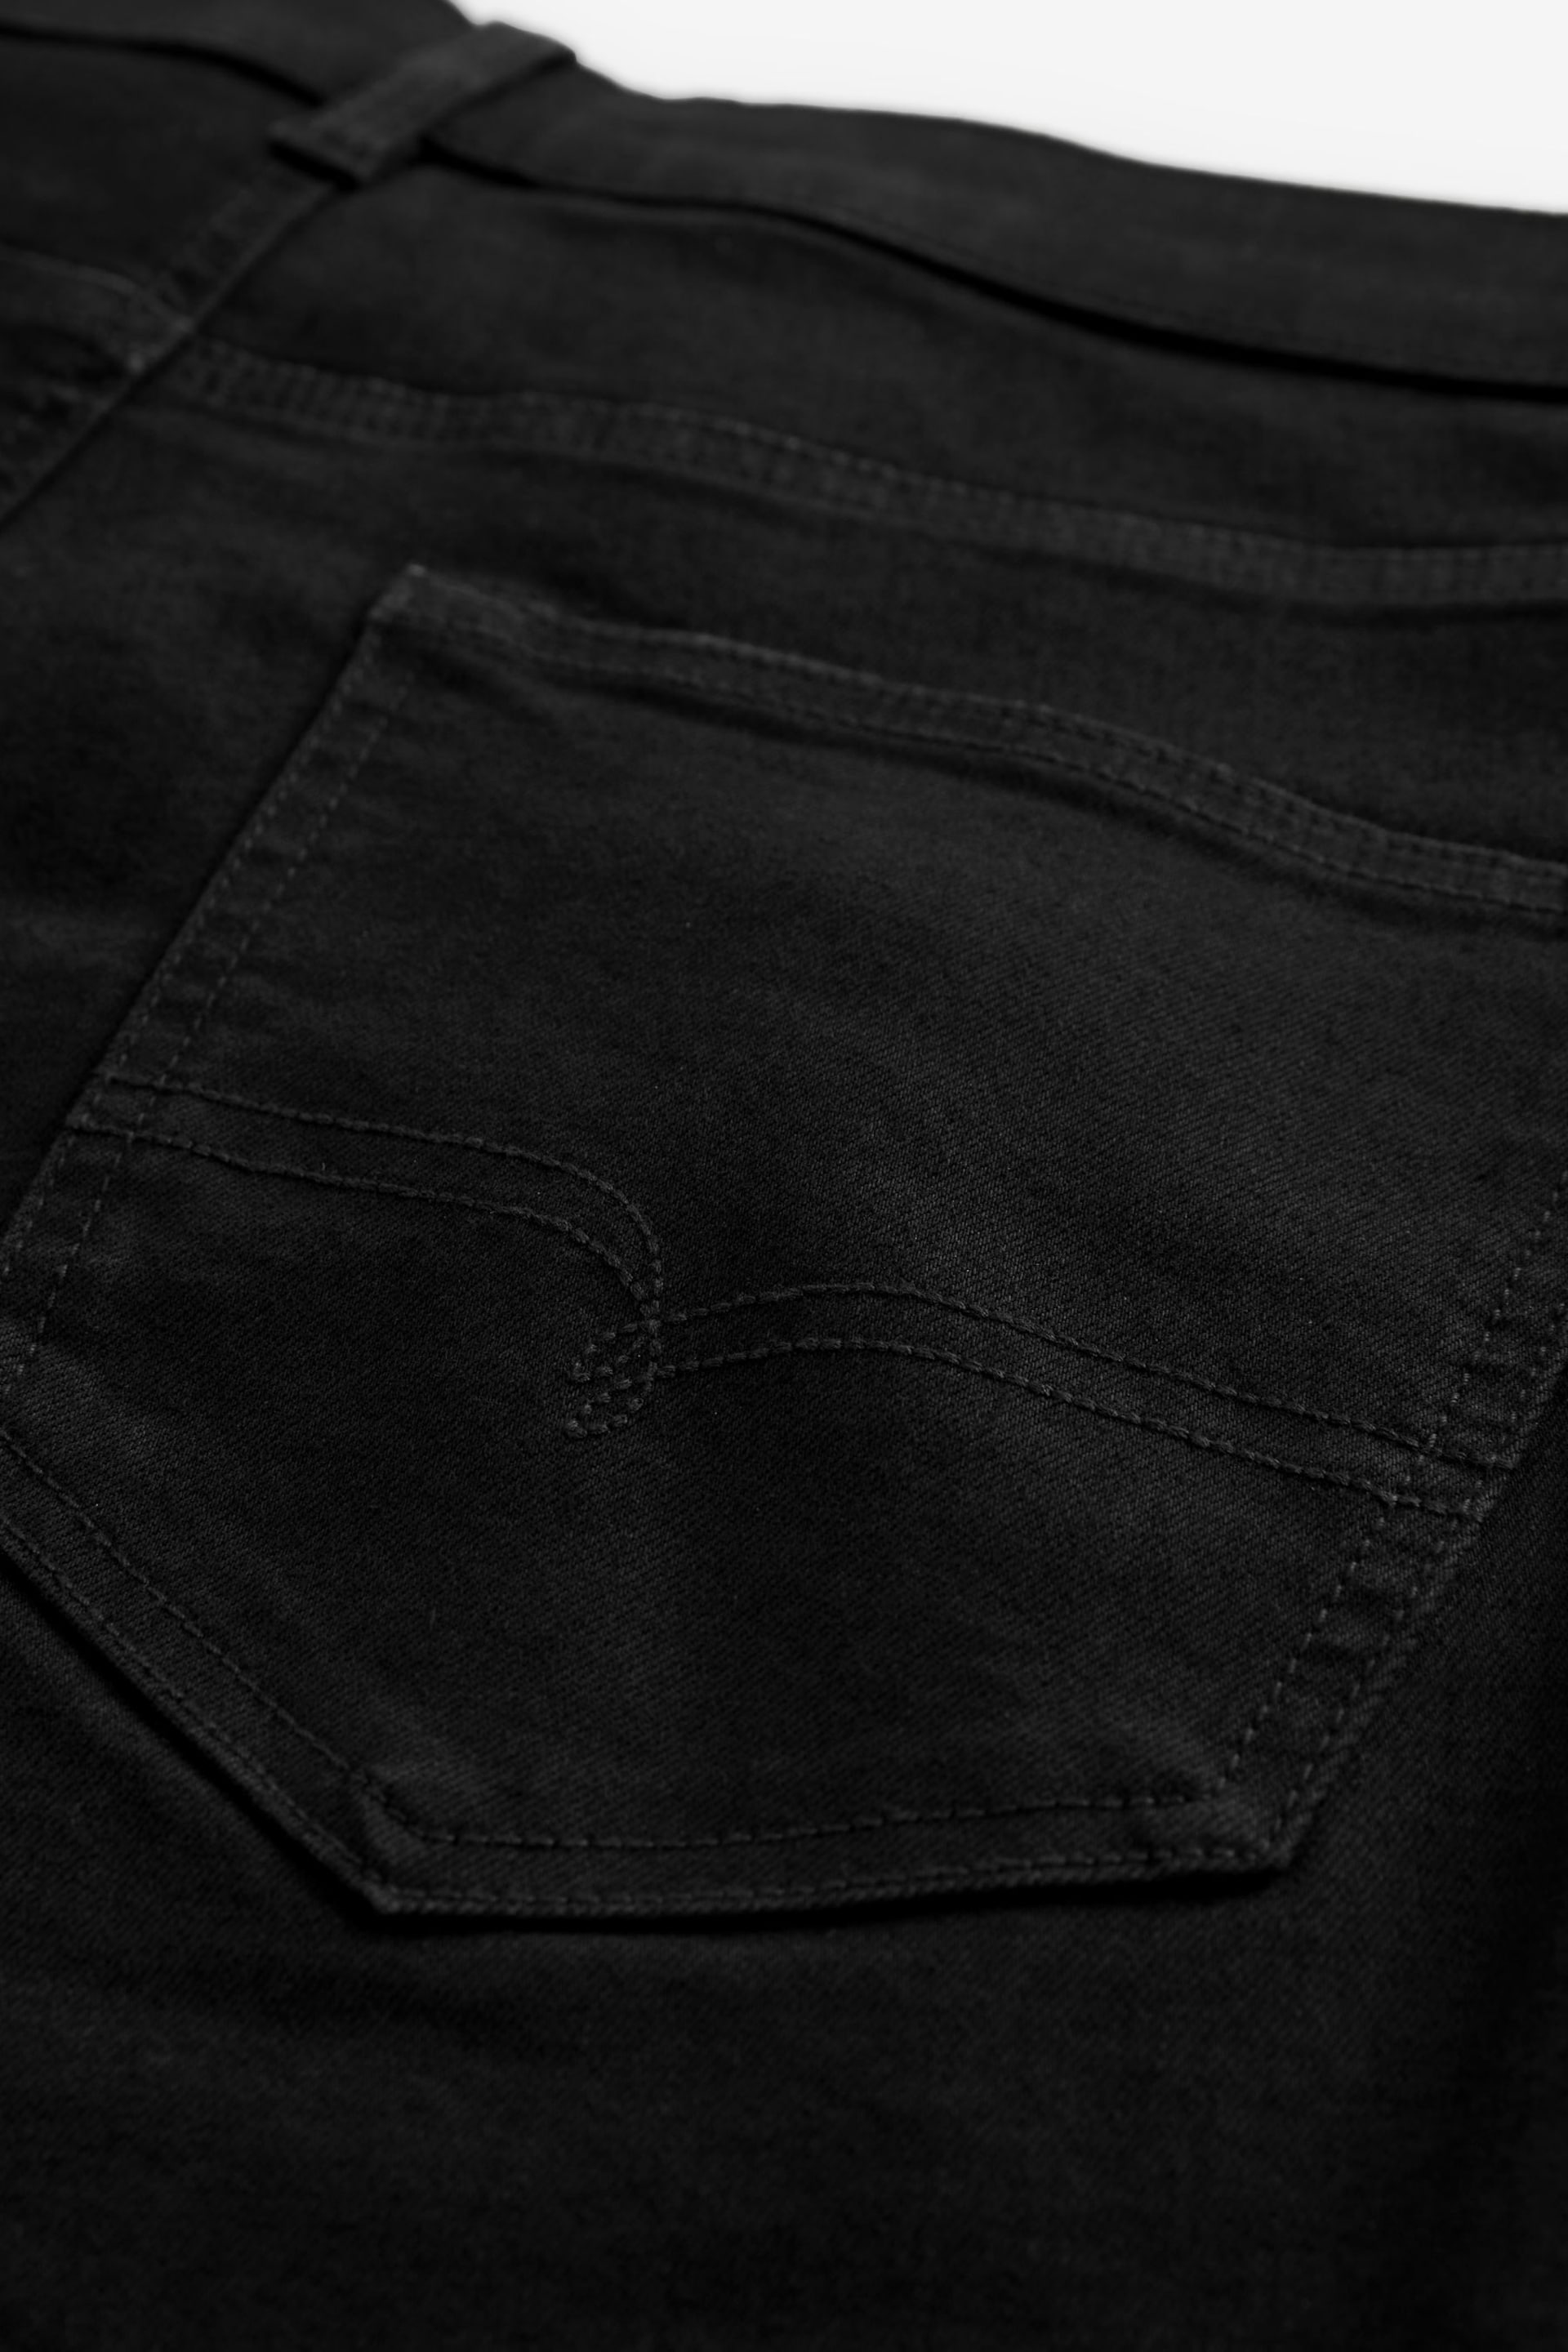 Black Skinny Fit Motion Flex Jeans - Image 10 of 12